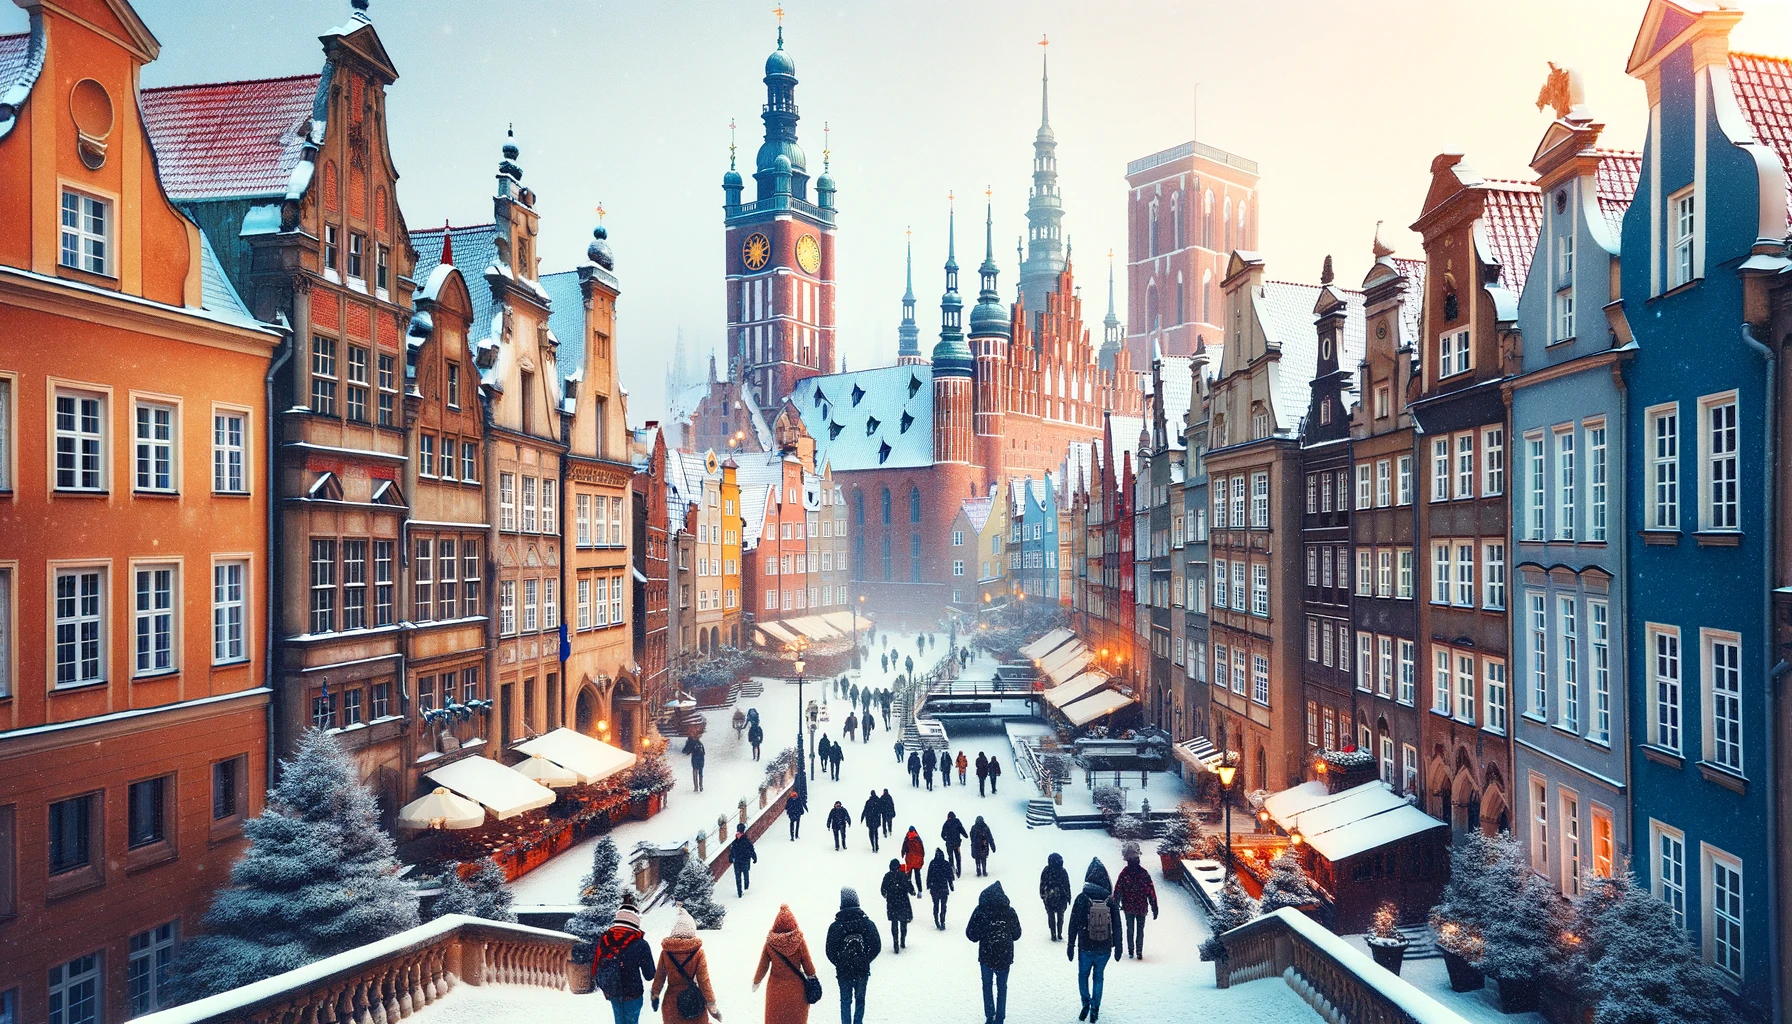 Turystyka zimowa w Gdańsku, z odwiedzającymi ubranymi na ciepło, eksplorującymi śnieżne ulice i historyczne budynki